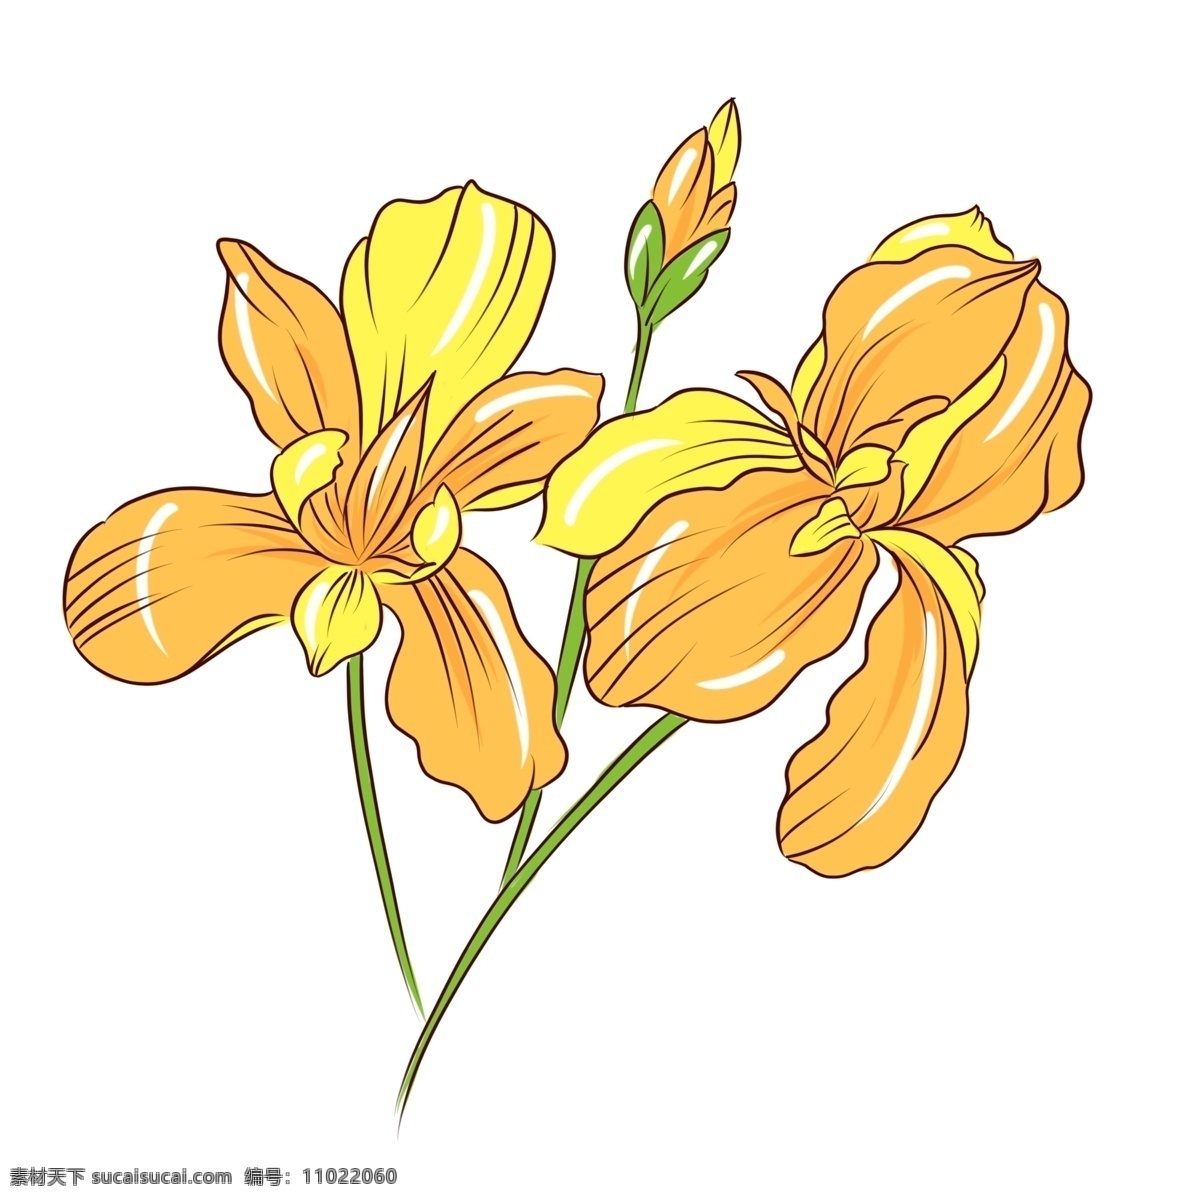 手绘 植物 花卉 黄色 花束 商用 手绘植物 手绘花卉 植物花卉 花草树木 手绘花草 手绘花束